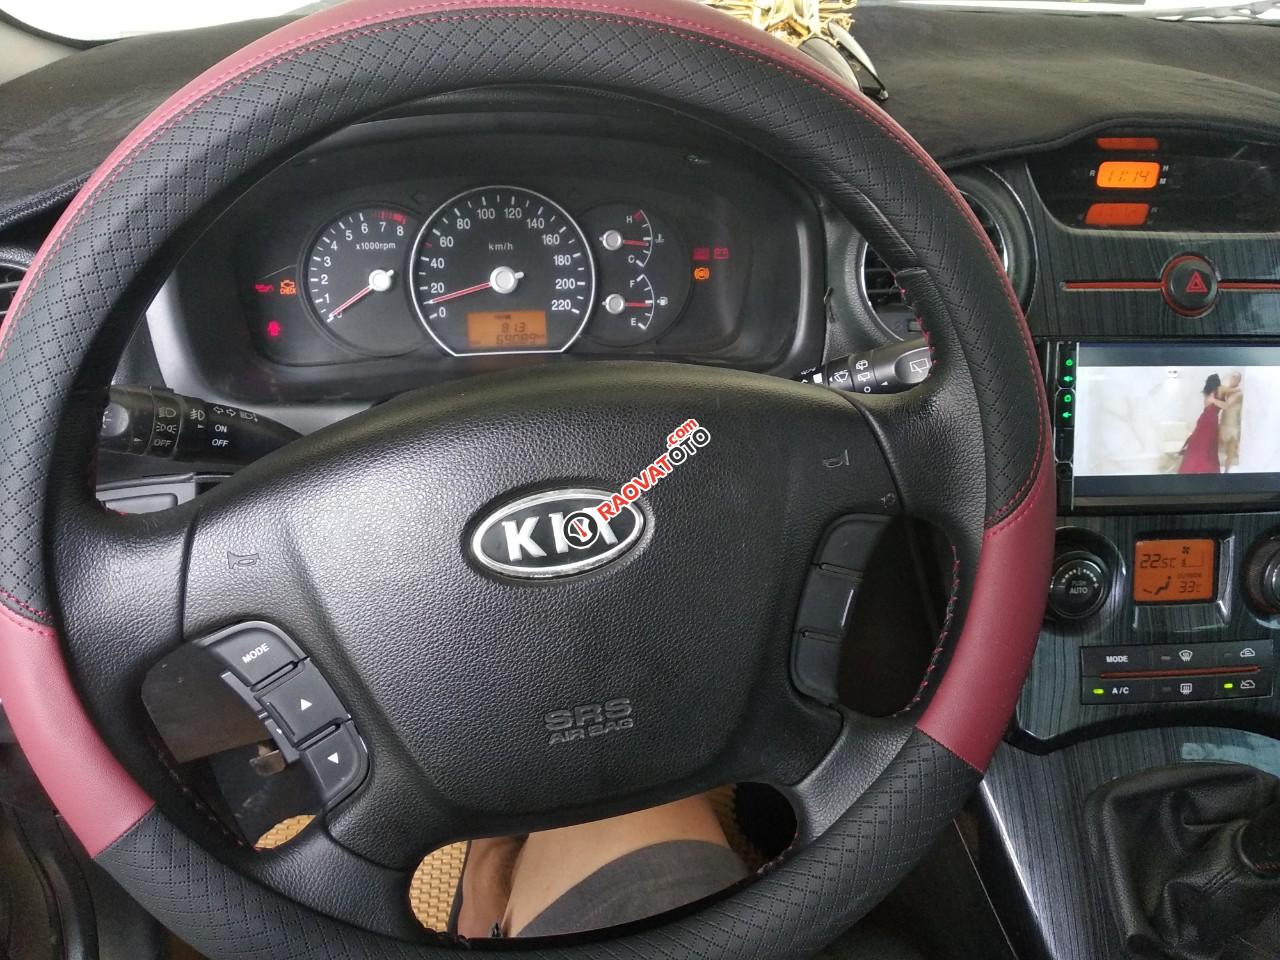 Bán ô tô Kia Carens MT 2.0 năm 2015, màu xám (ghi)-3